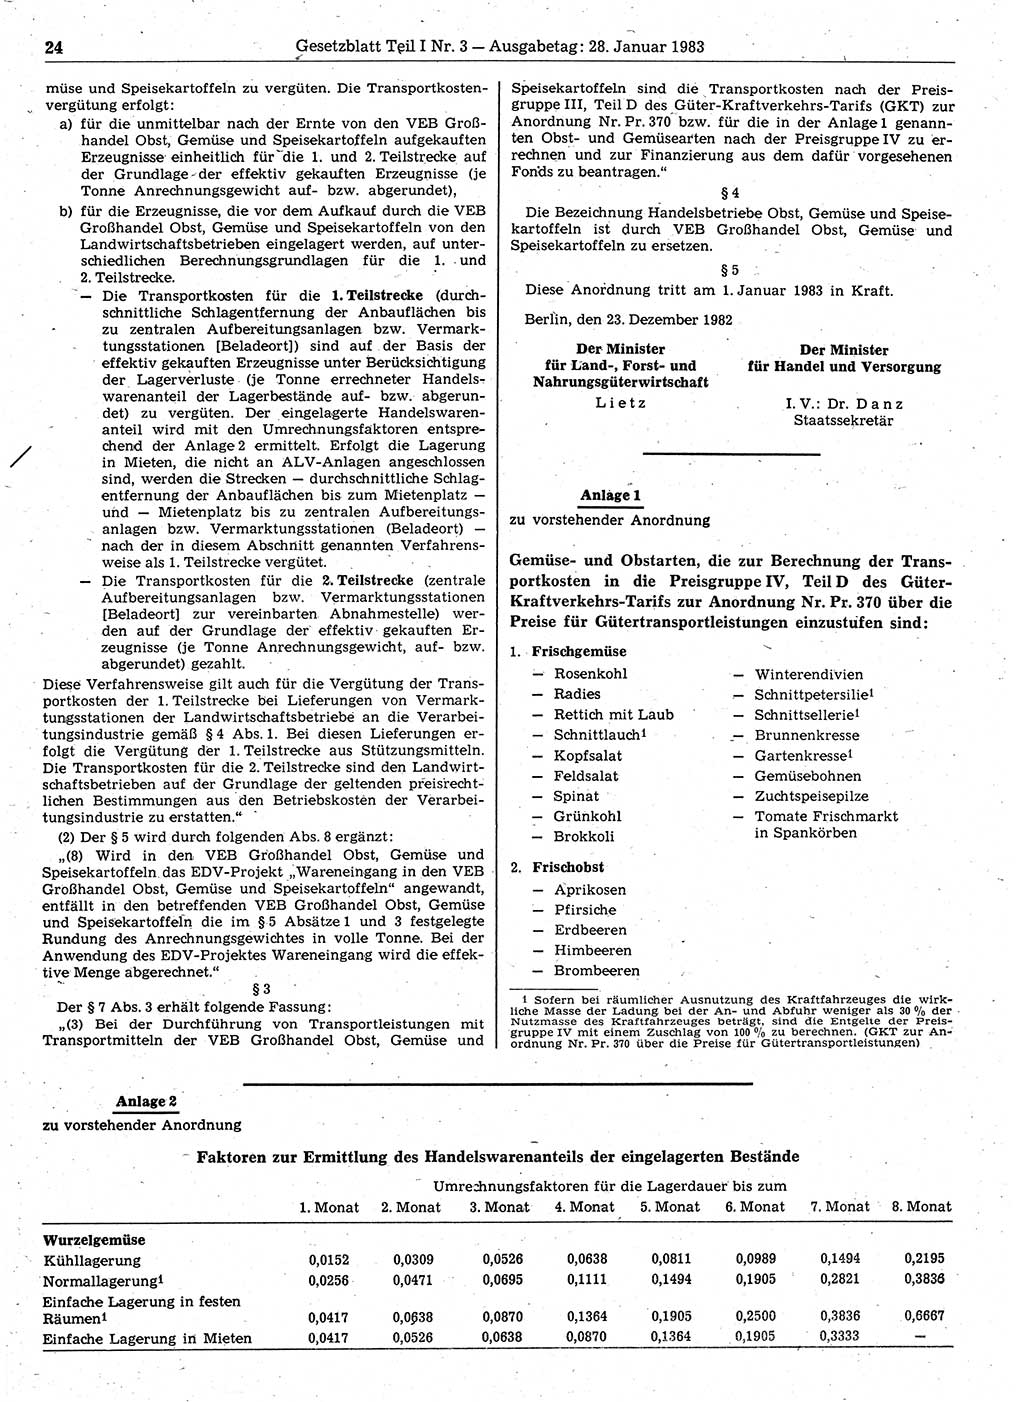 Gesetzblatt (GBl.) der Deutschen Demokratischen Republik (DDR) Teil Ⅰ 1983, Seite 24 (GBl. DDR Ⅰ 1983, S. 24)